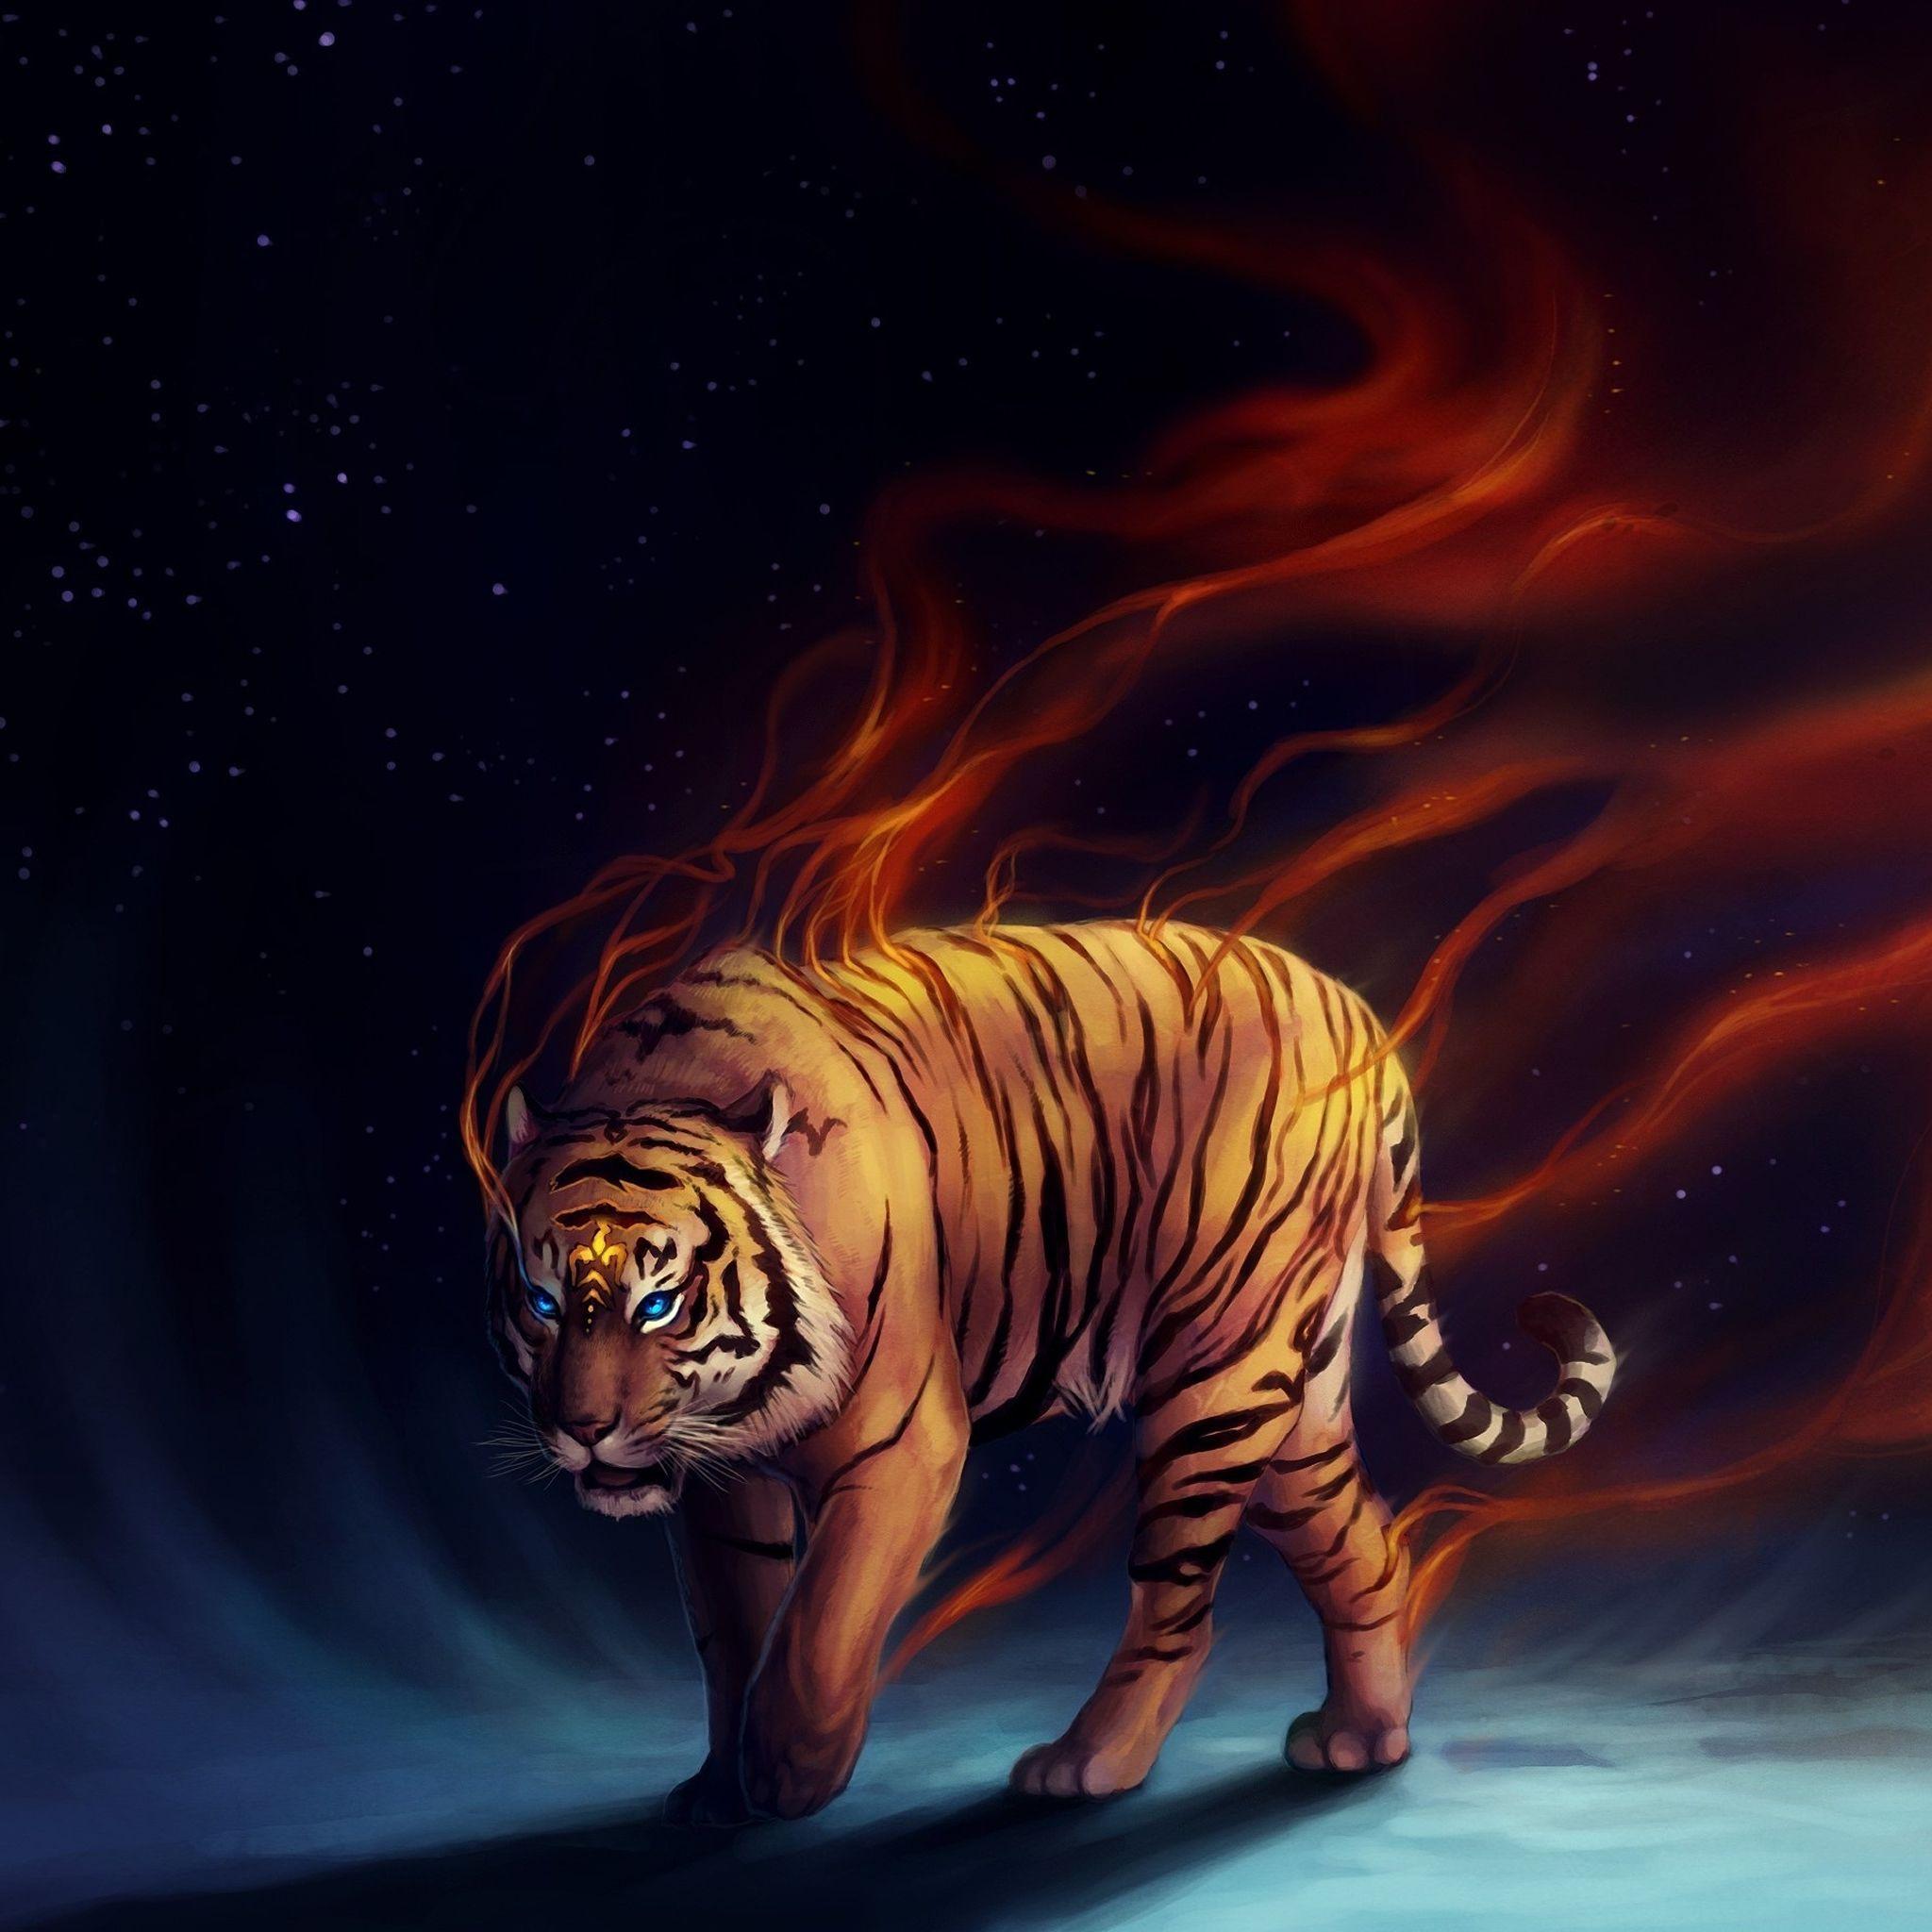 Really cool tiger art. Tiger's Curse. Tiger art, Wallpaper, Tiger